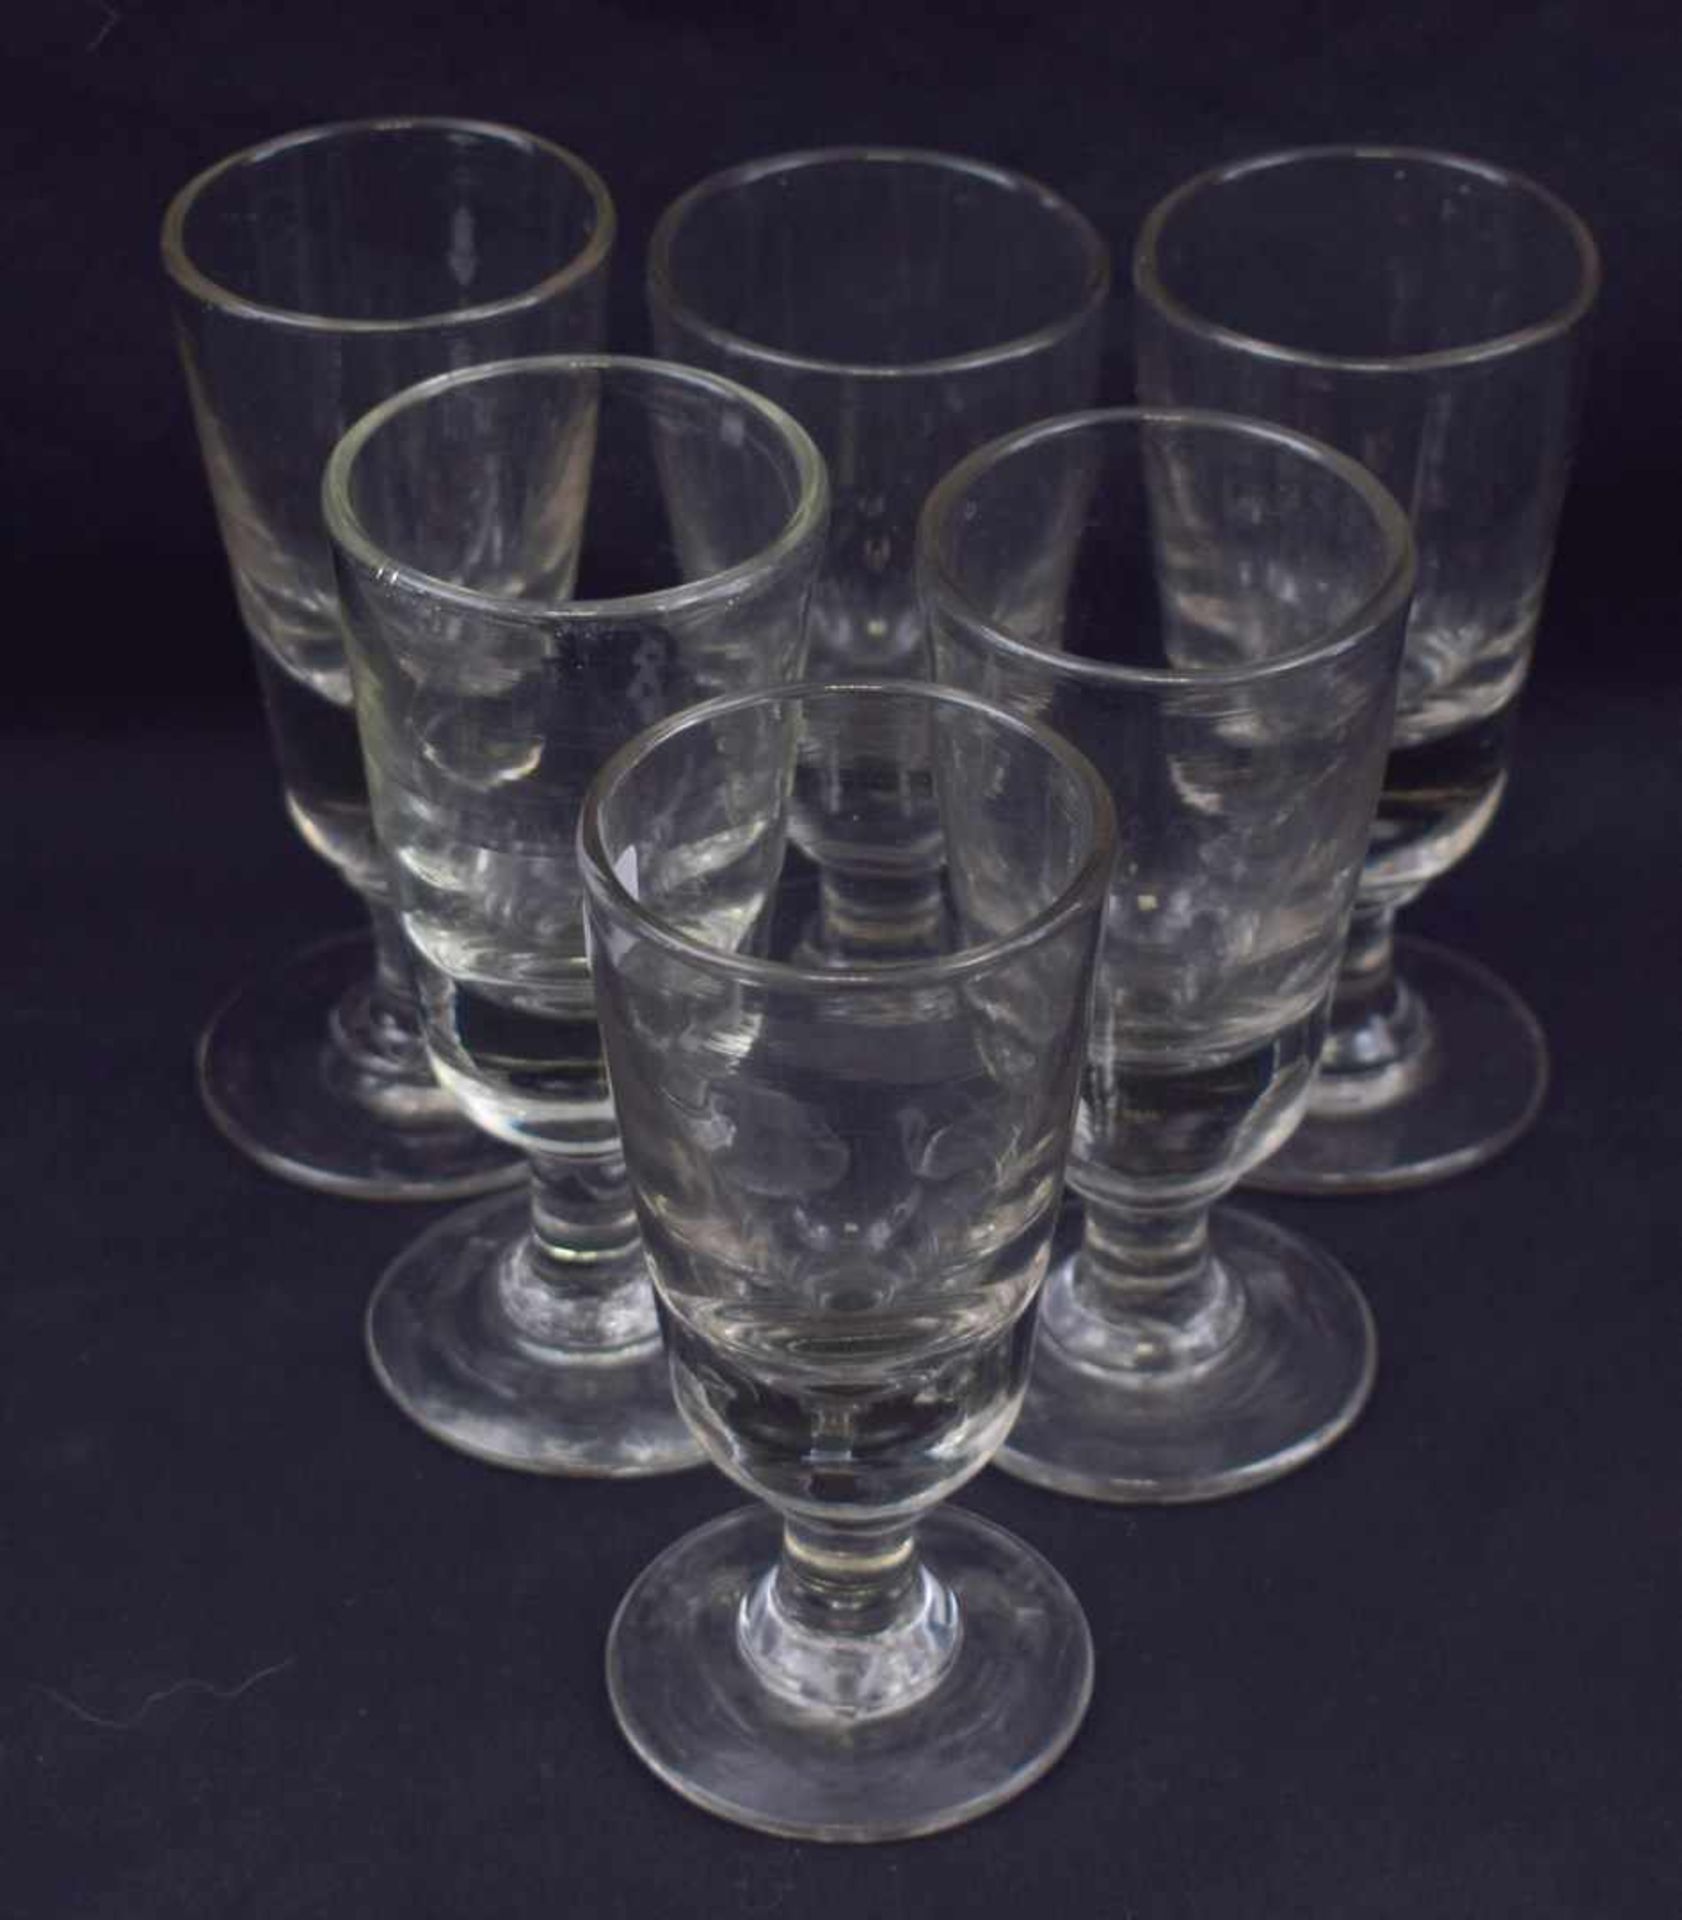 Sechs Weingläser farbl. Glas, runder Fuß, H 15 cm, 19. Jh.